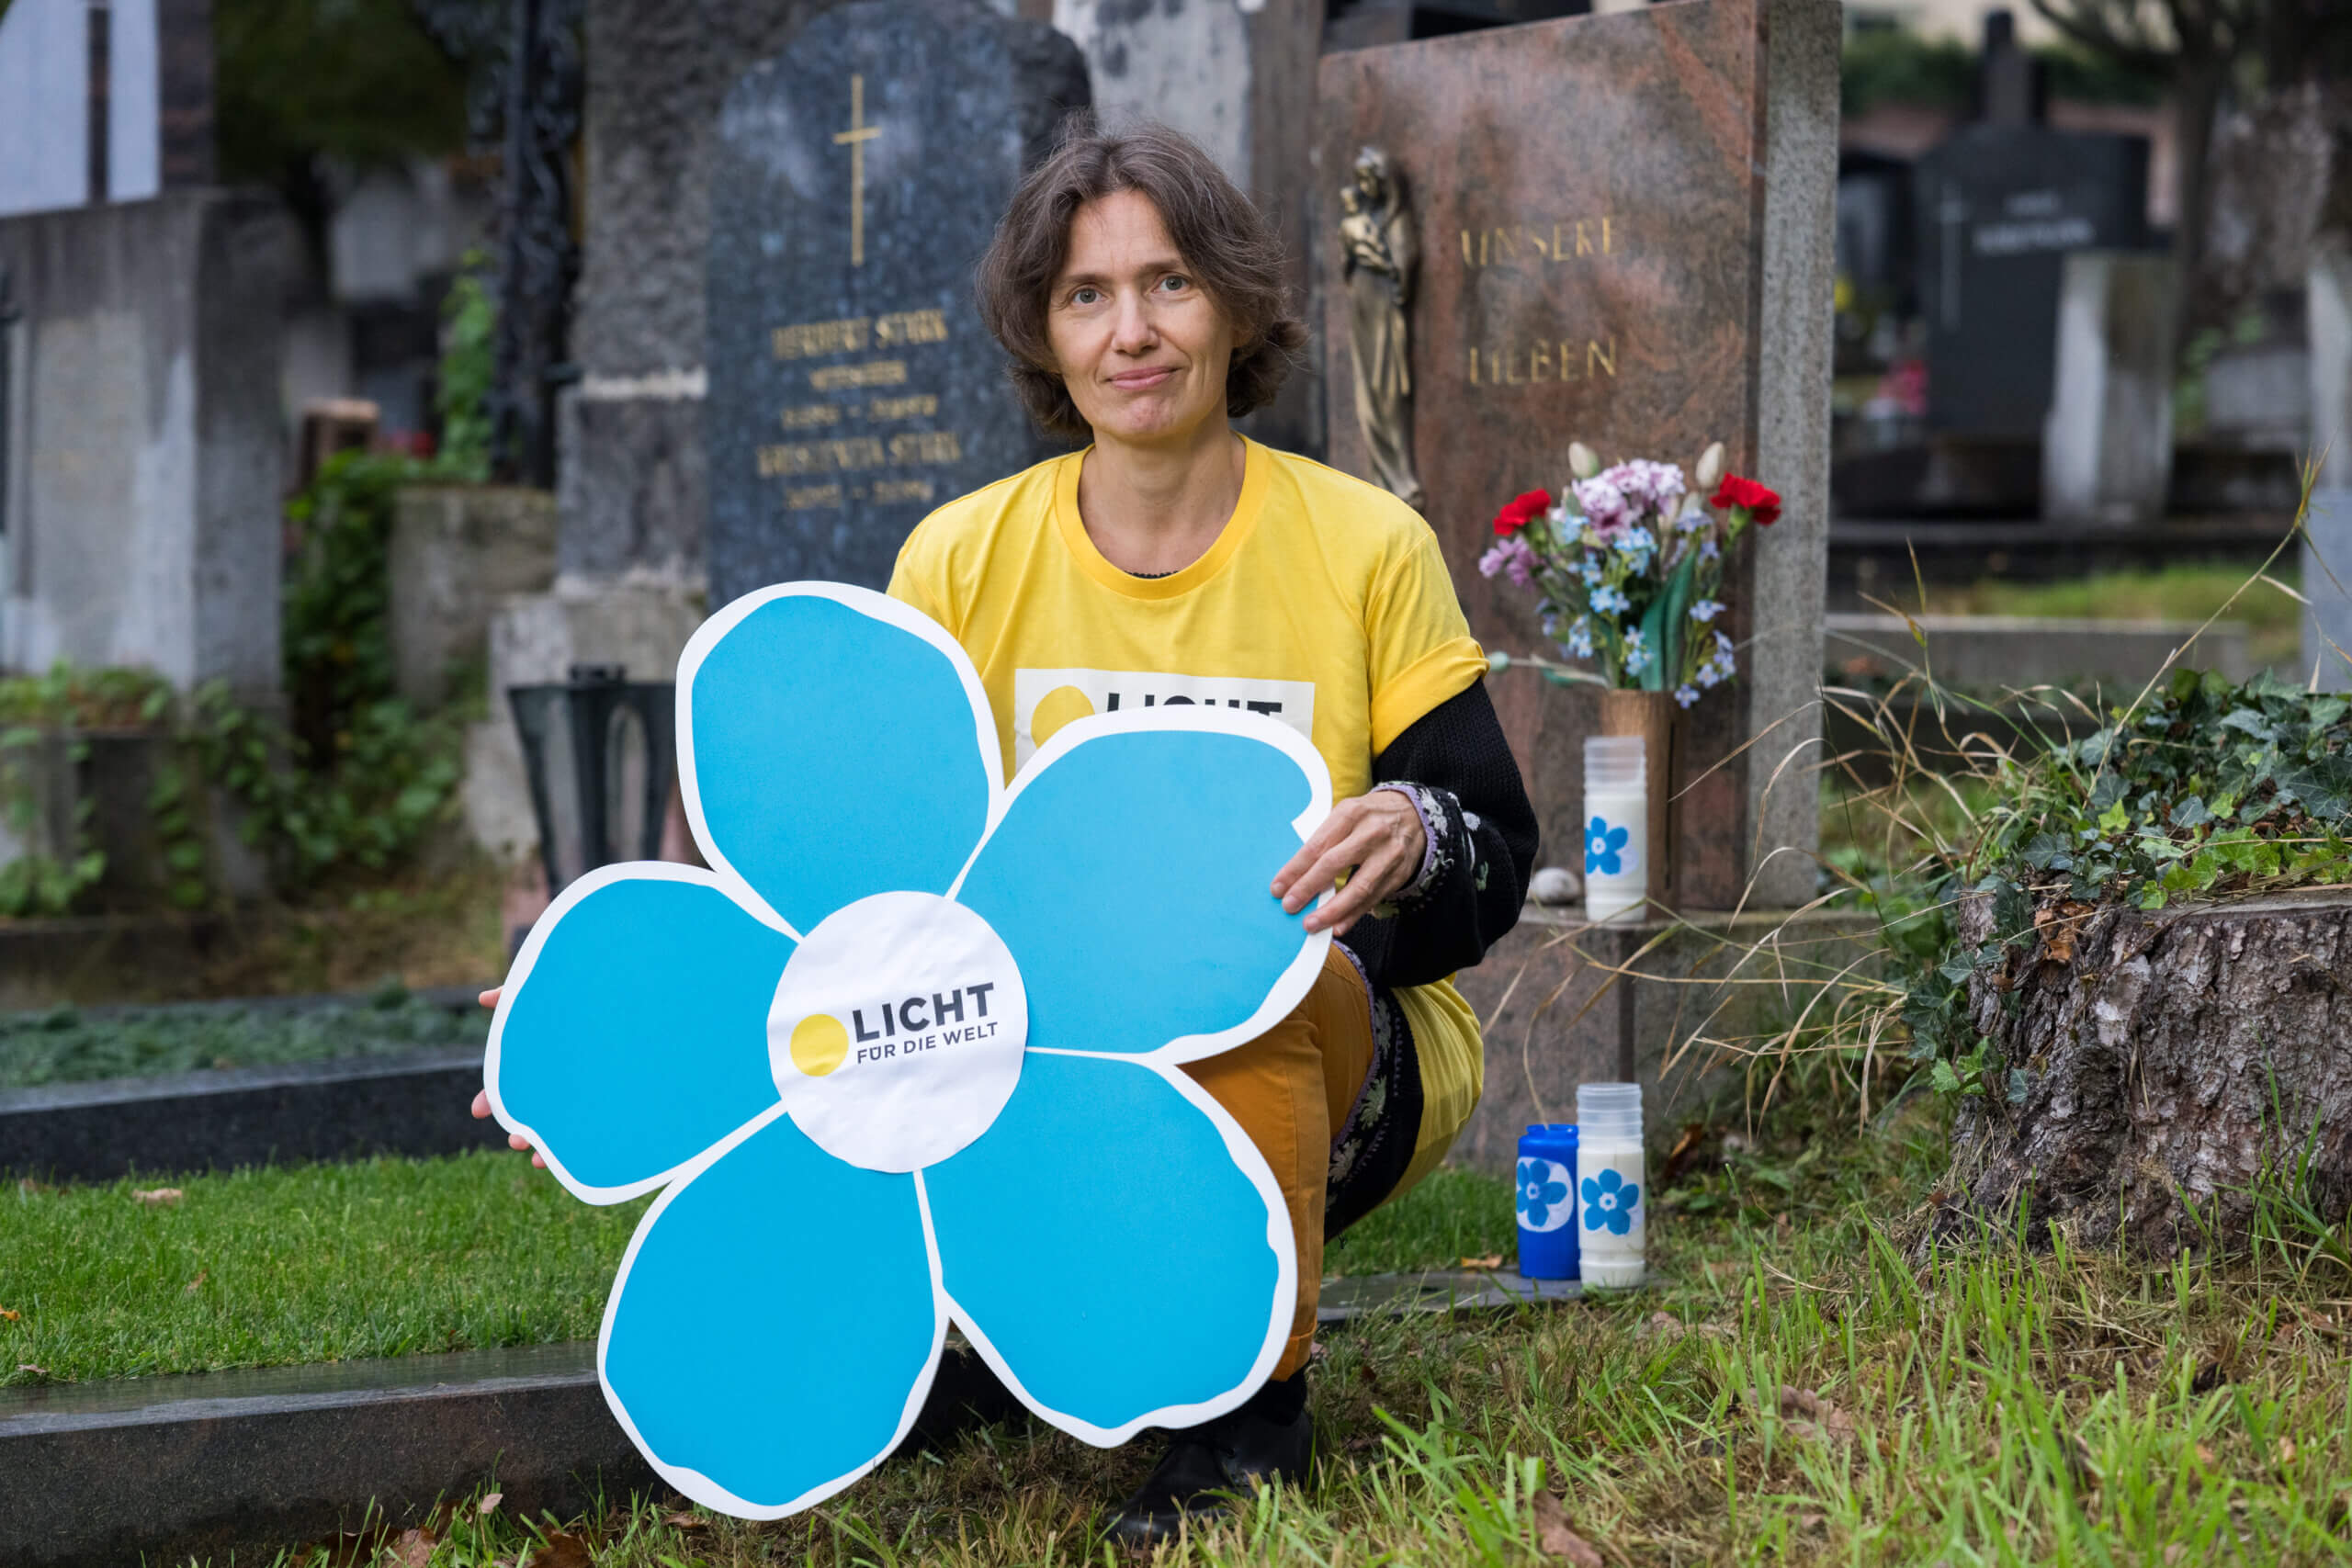 Eva Dürr im gelben Licht für die Welt T-Shirt mit einem großen blauen Vergissmeinnicht aus Karton in der Hand in der Hocke vor einem Grabstein